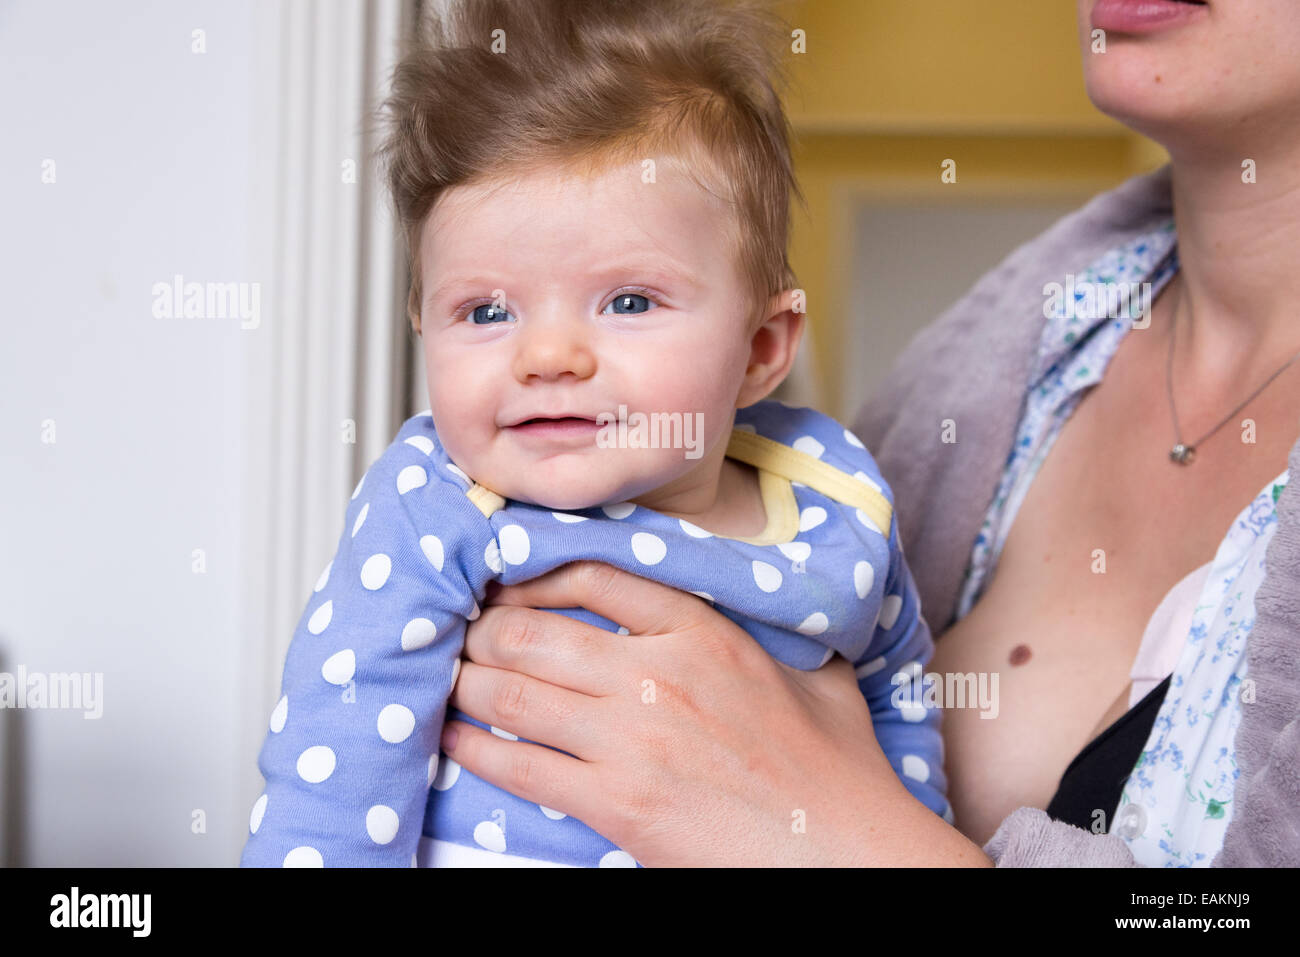 La madre la celebración de tres meses de edad chica con mucho pelo Foto de stock